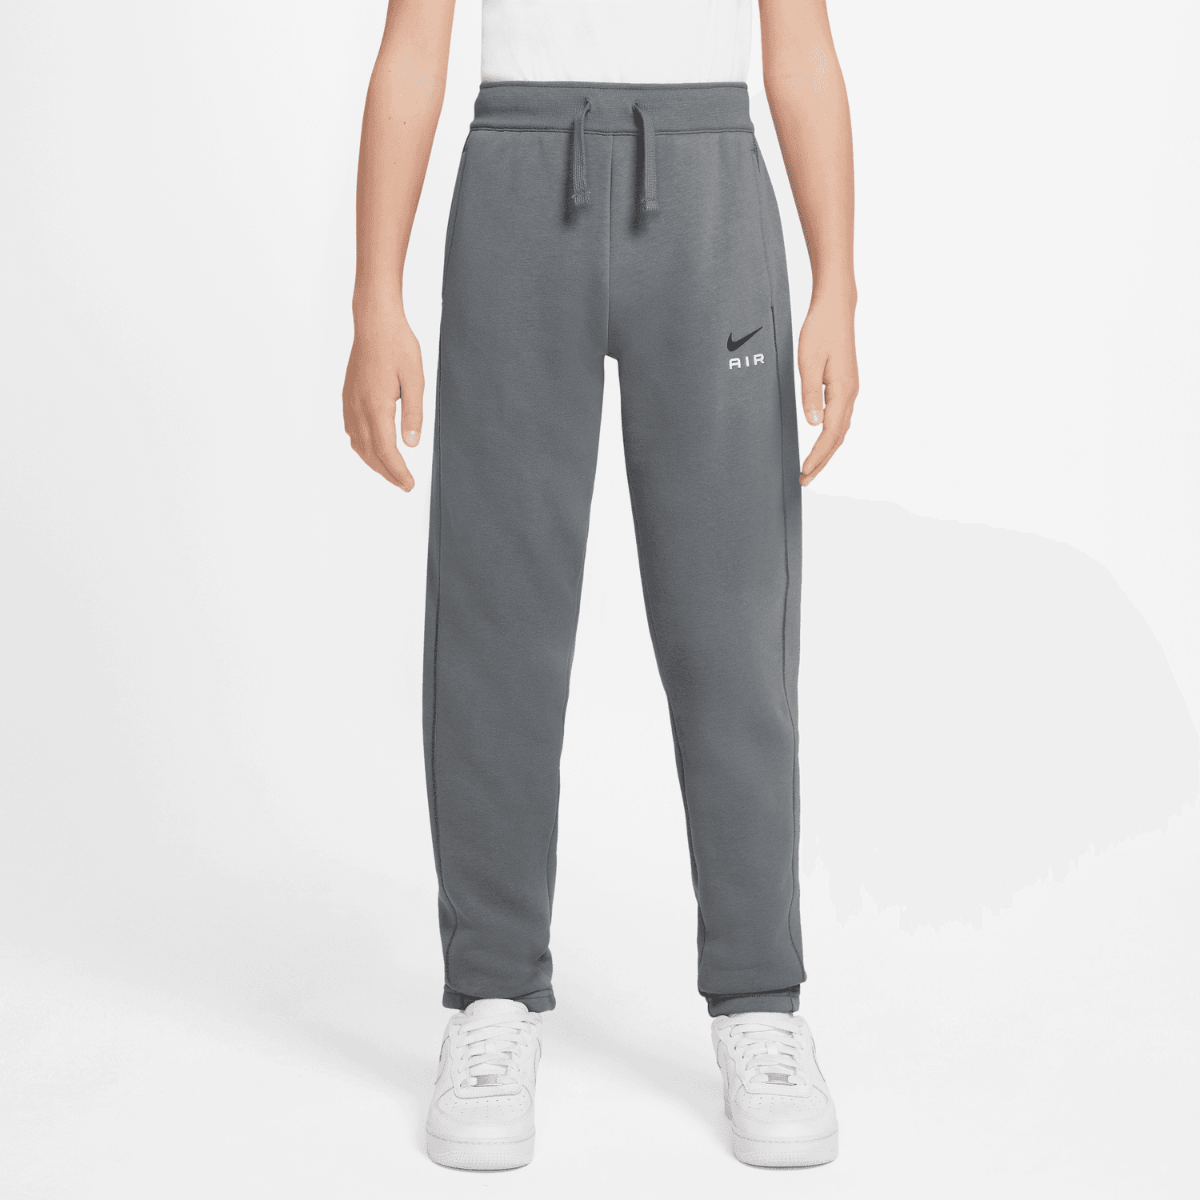 Pantalon Nike Air Junior - Gris/Blanc